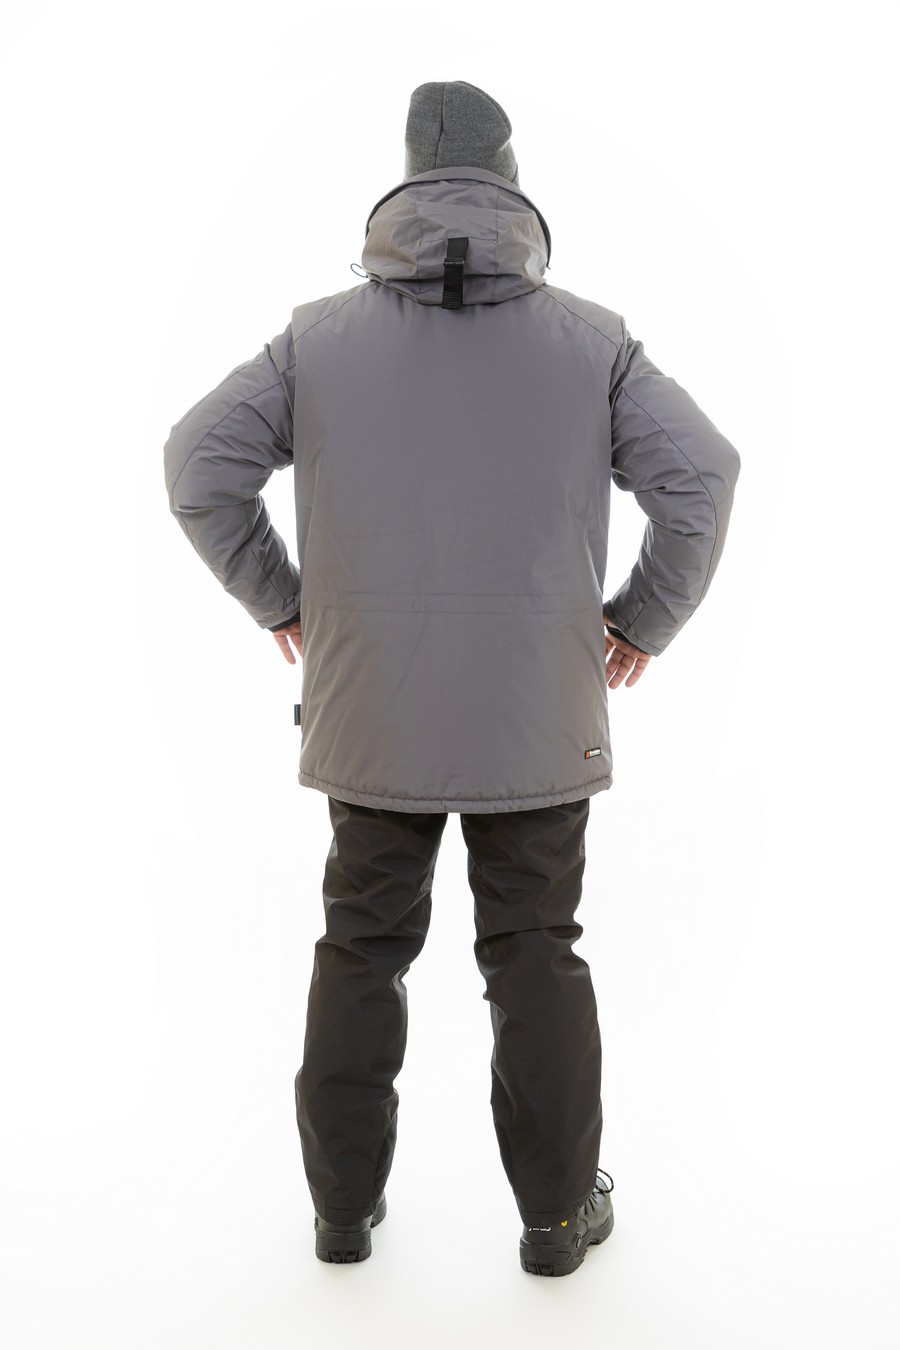 Зимняя куртка-парка BRODEKS KW204, серый